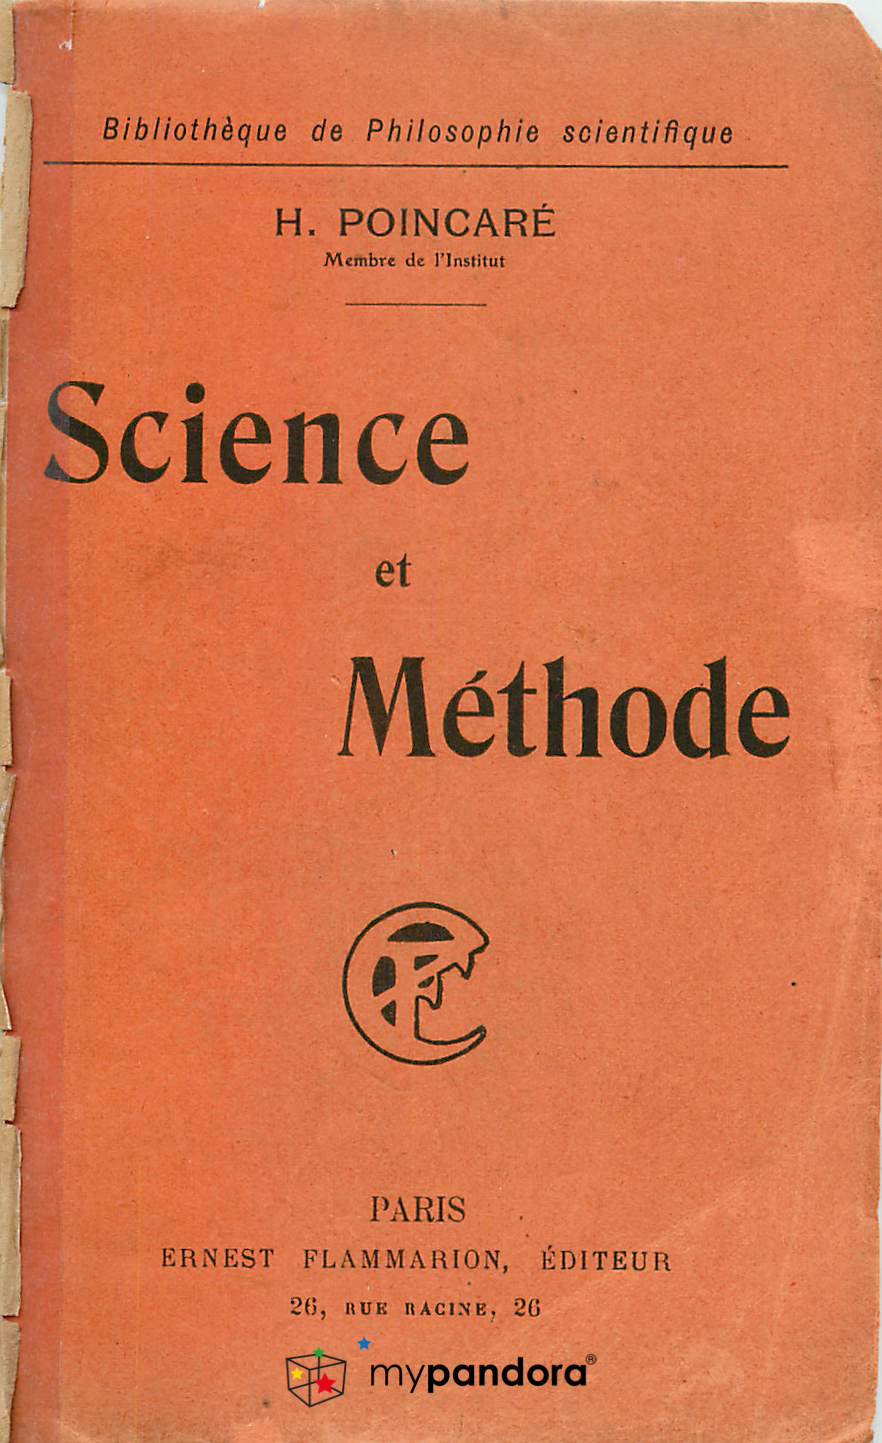 Livre Jules Henri Poincaré Science et Méthode, Paris 1908, Flammarion